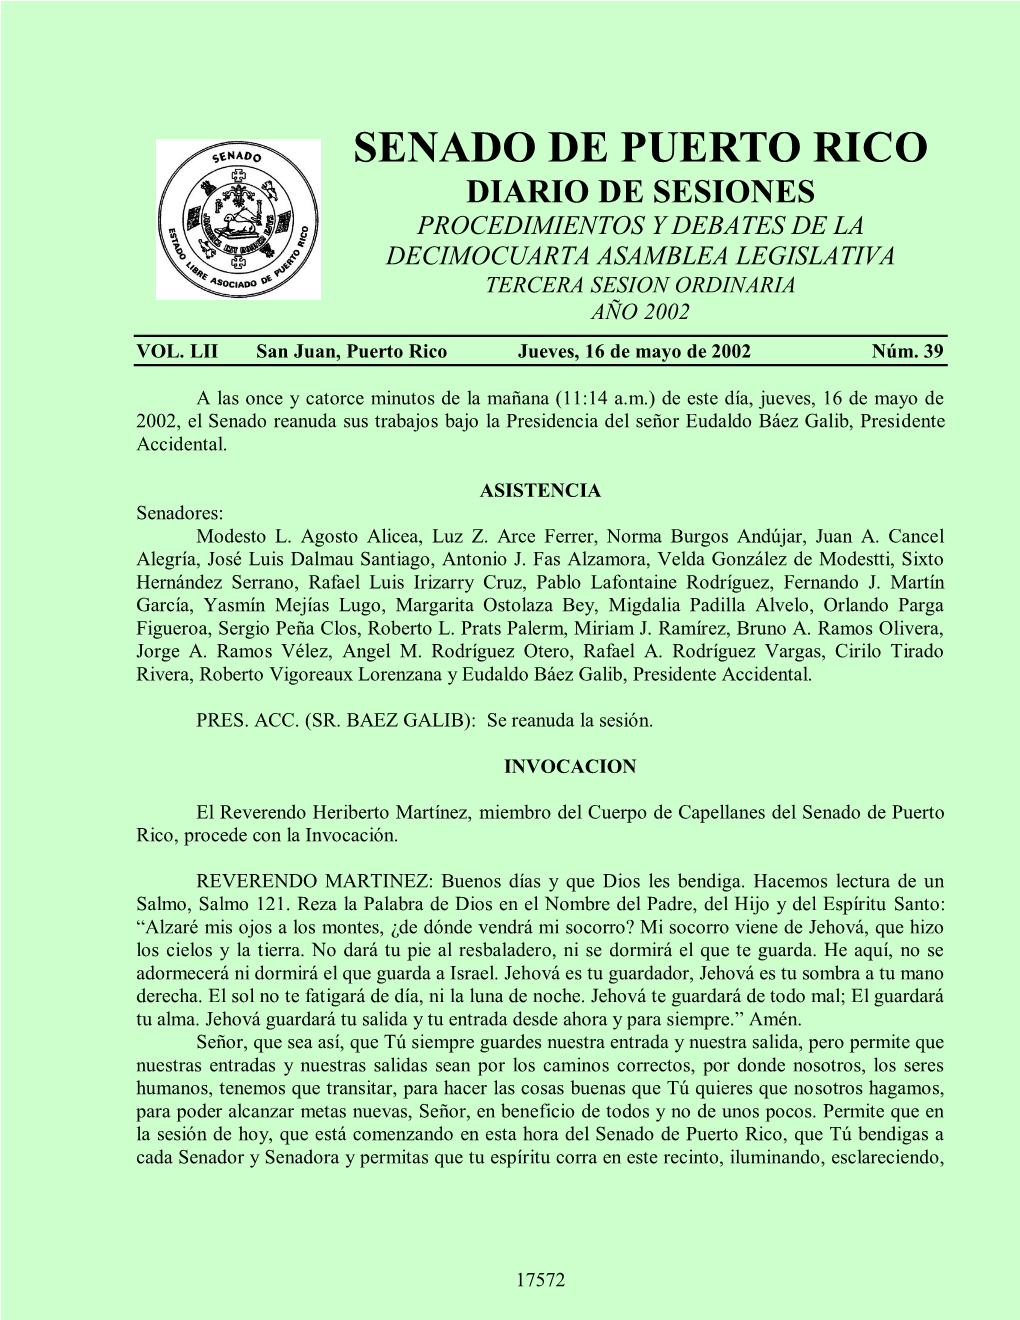 Senado De Puerto Rico Diario De Sesiones Procedimientos Y Debates De La Decimocuarta Asamblea Legislativa Tercera Sesion Ordinaria Año 2002 Vol